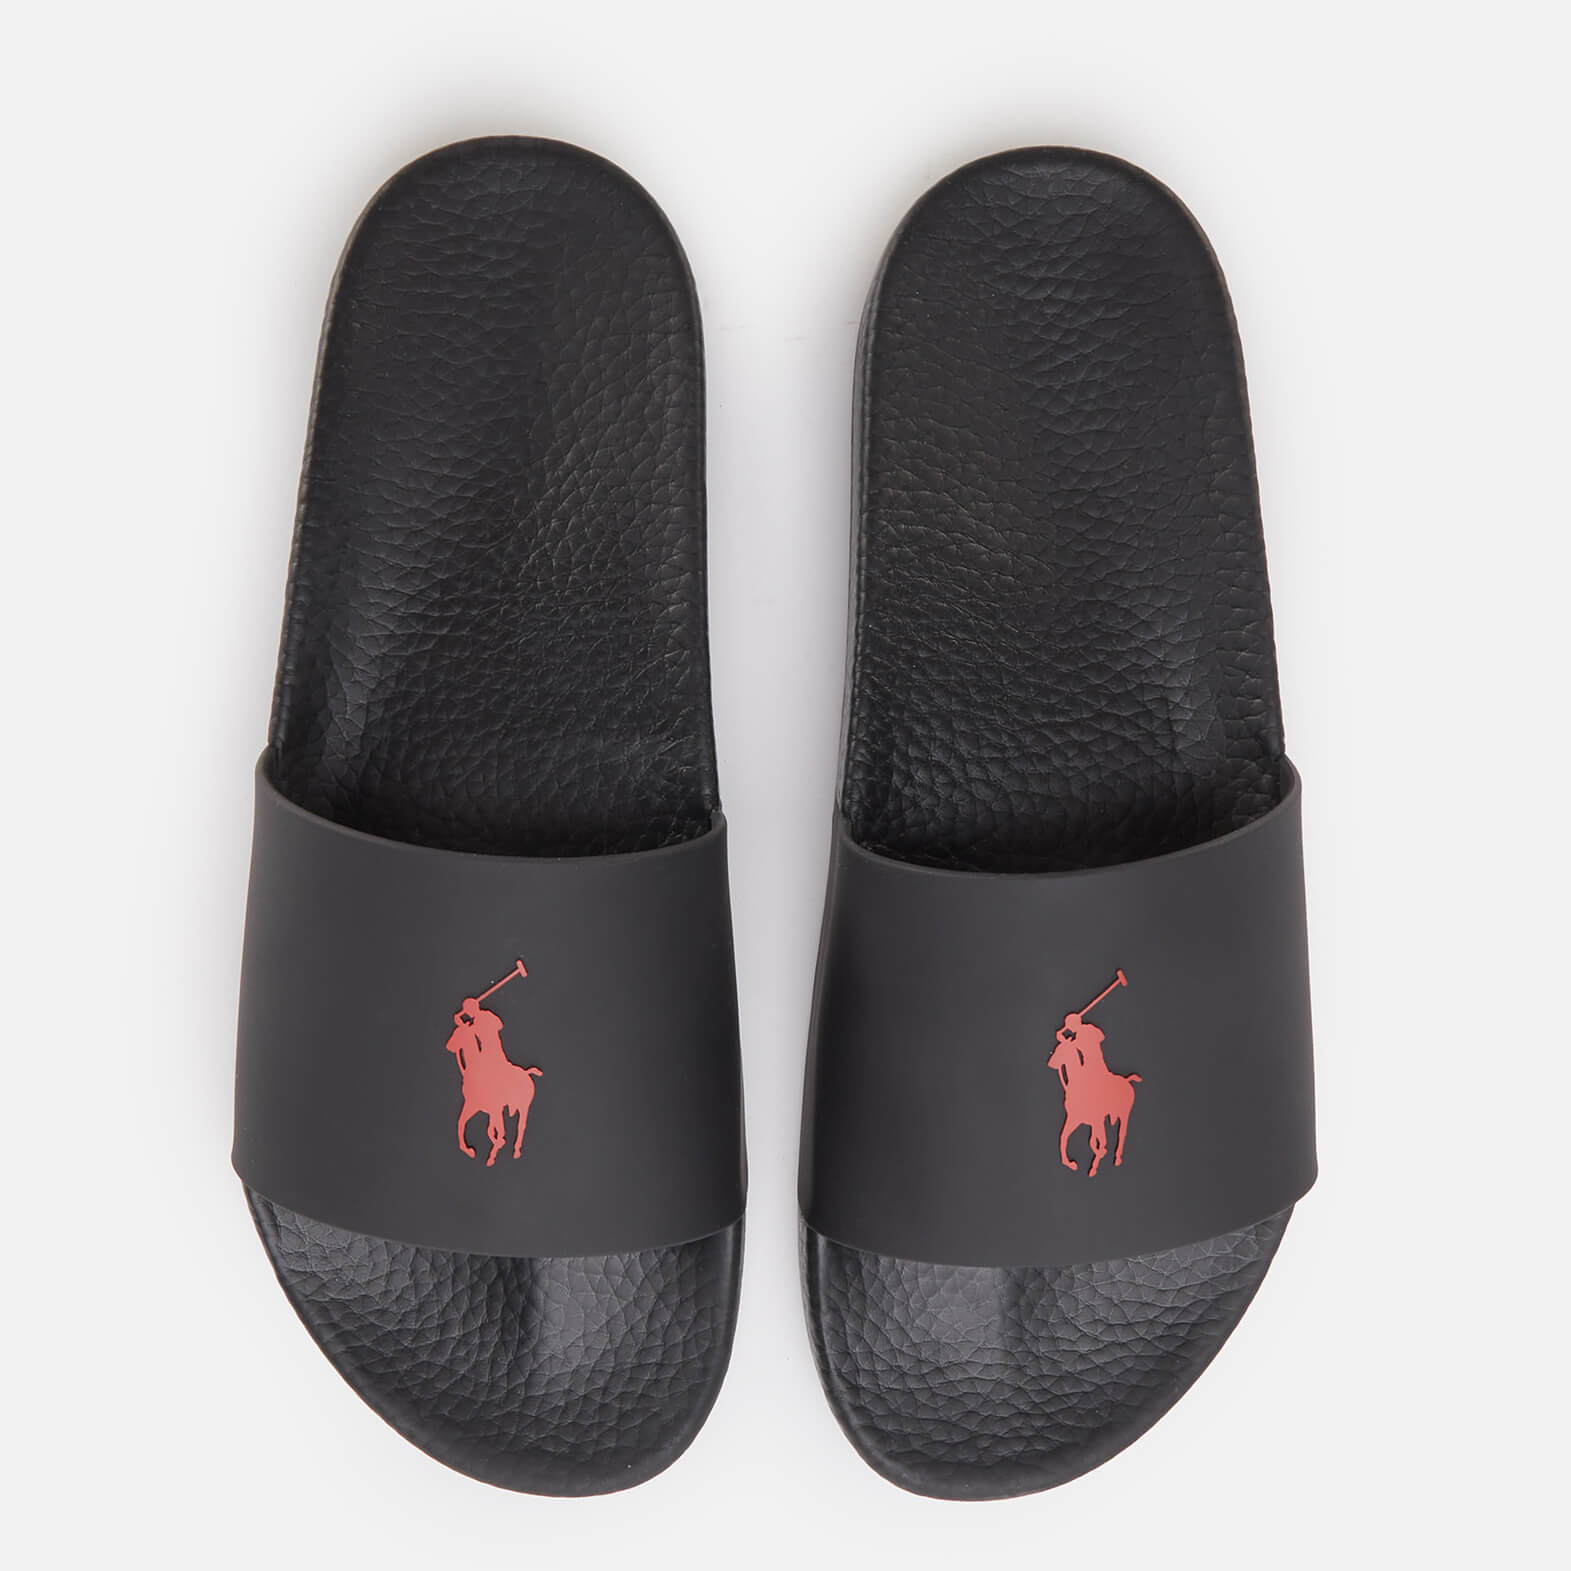 Polo Ralph Lauren Men's Pp Slide Sandals - Black/Red PP - UK 7